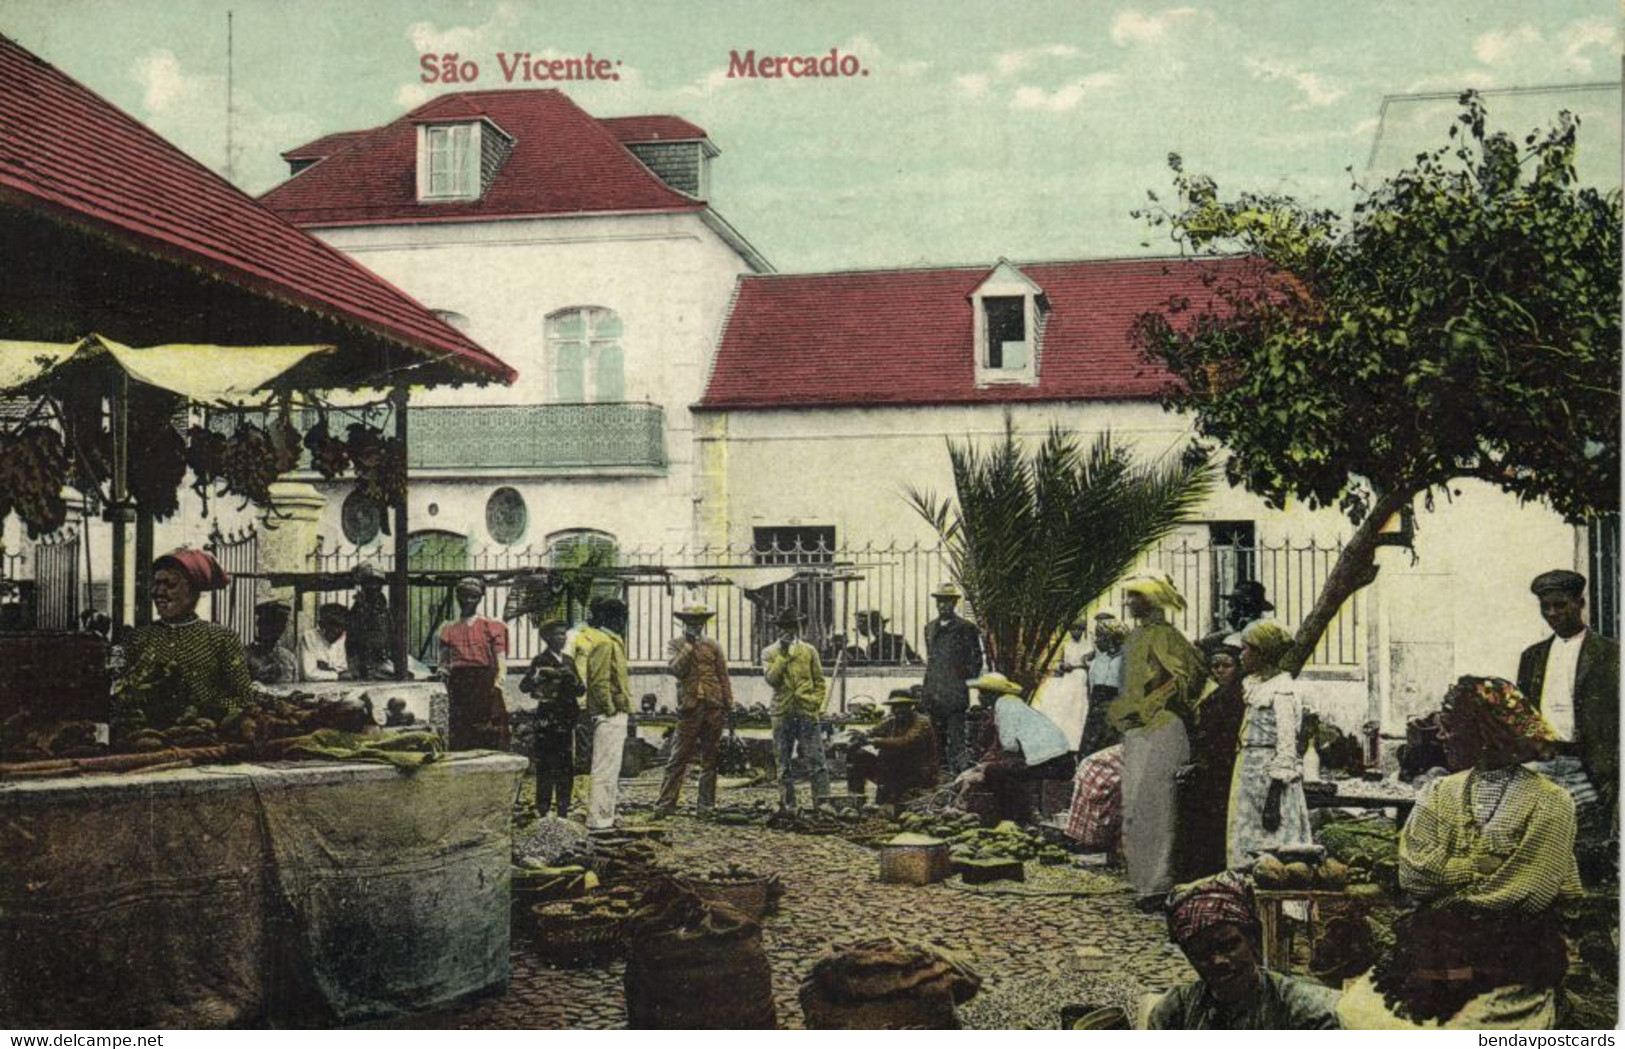 Cape Verde, SÃO VICENTE, Mercado, Native Market (1919) Postcard - Cap Vert